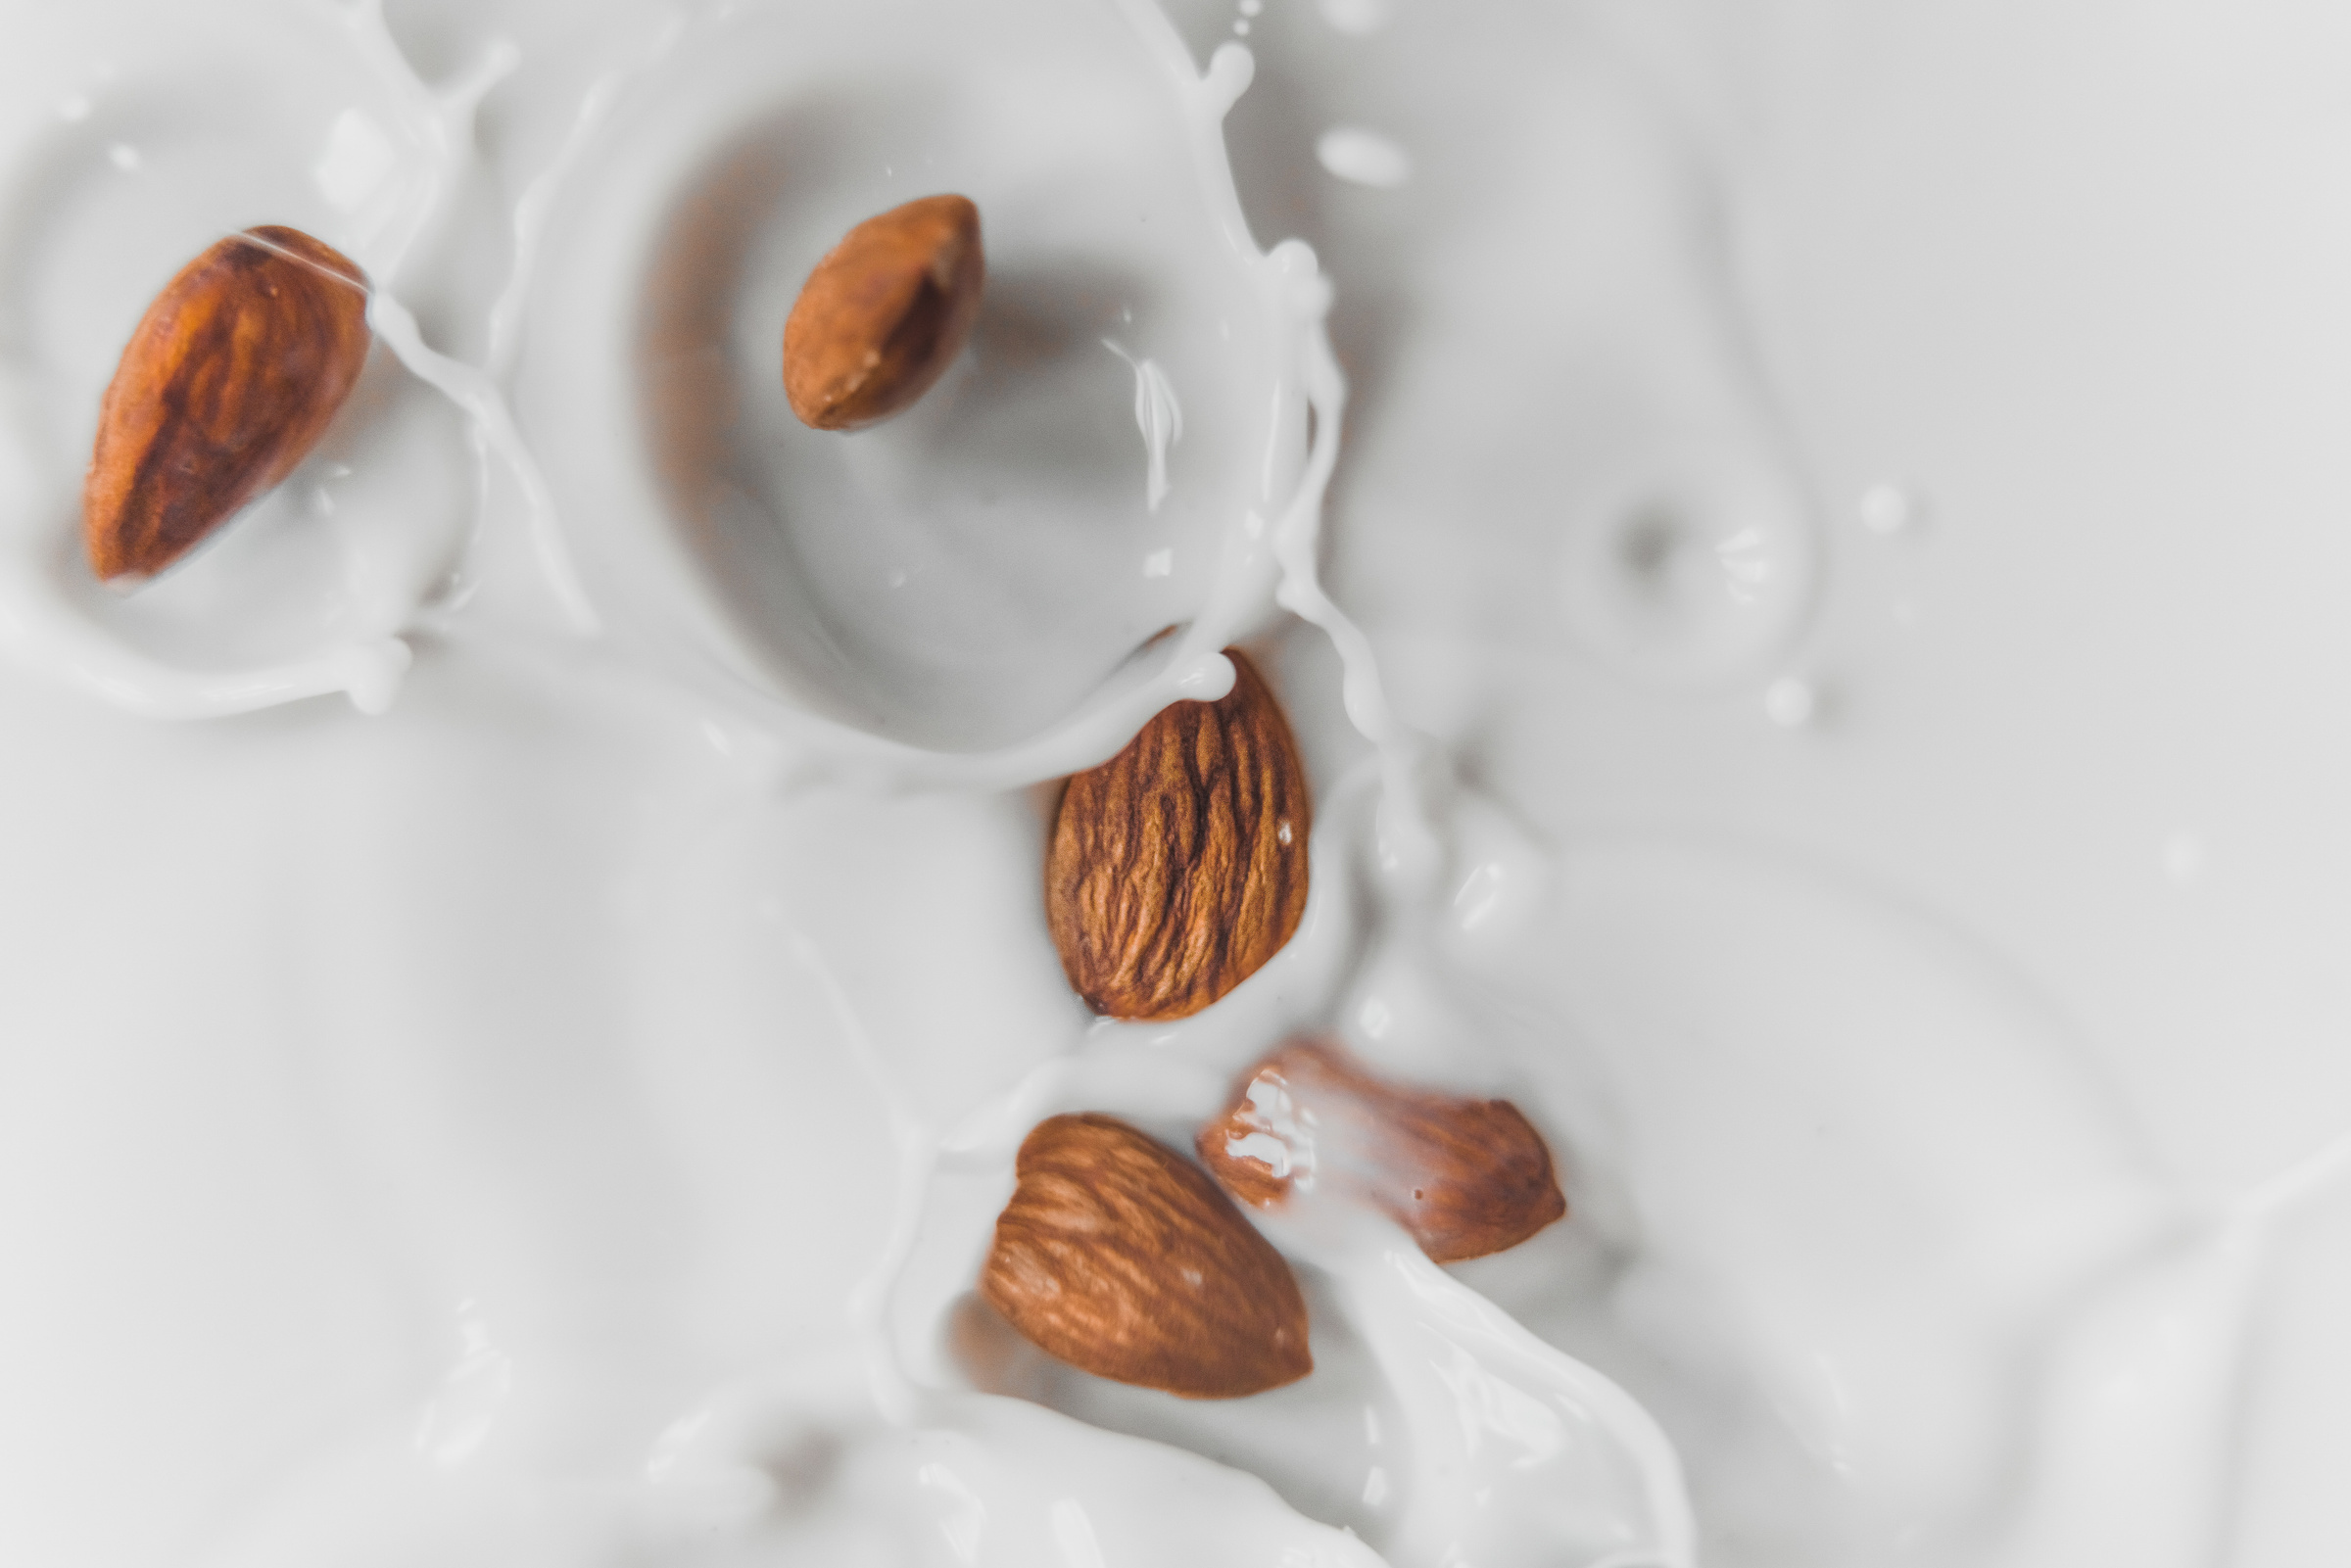 Если в составе много сахара, такое молоко усилит симптомы болезни и никакой пользы от этого нет. Фото © Unsplash / Austin Wilcox